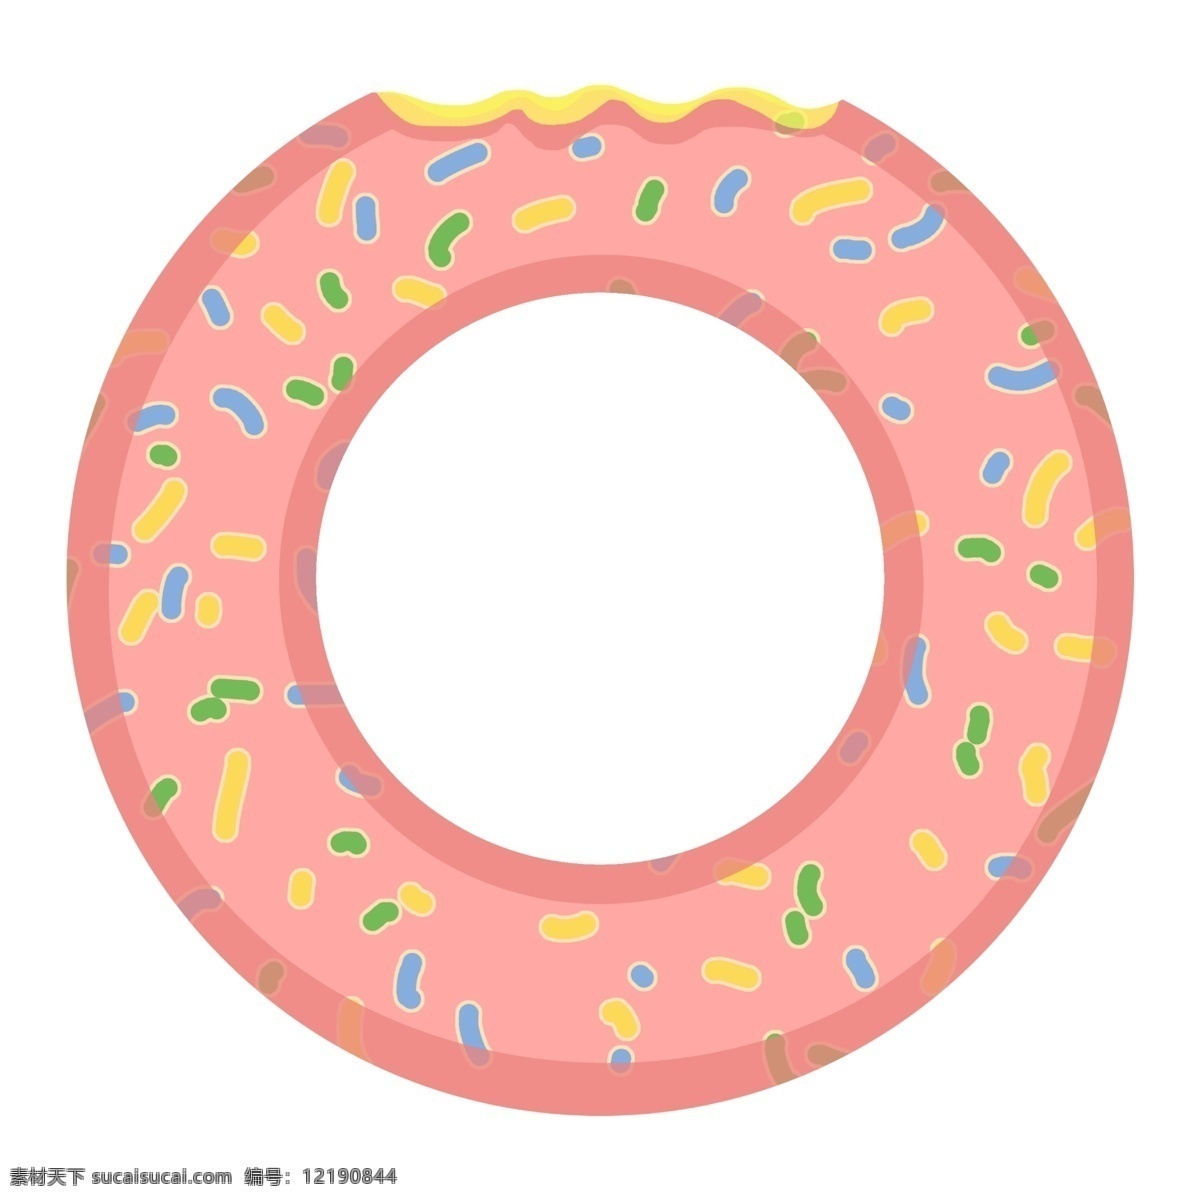 夏季 粉色 小 清新 甜甜 圈 游泳 游泳圈 可爱